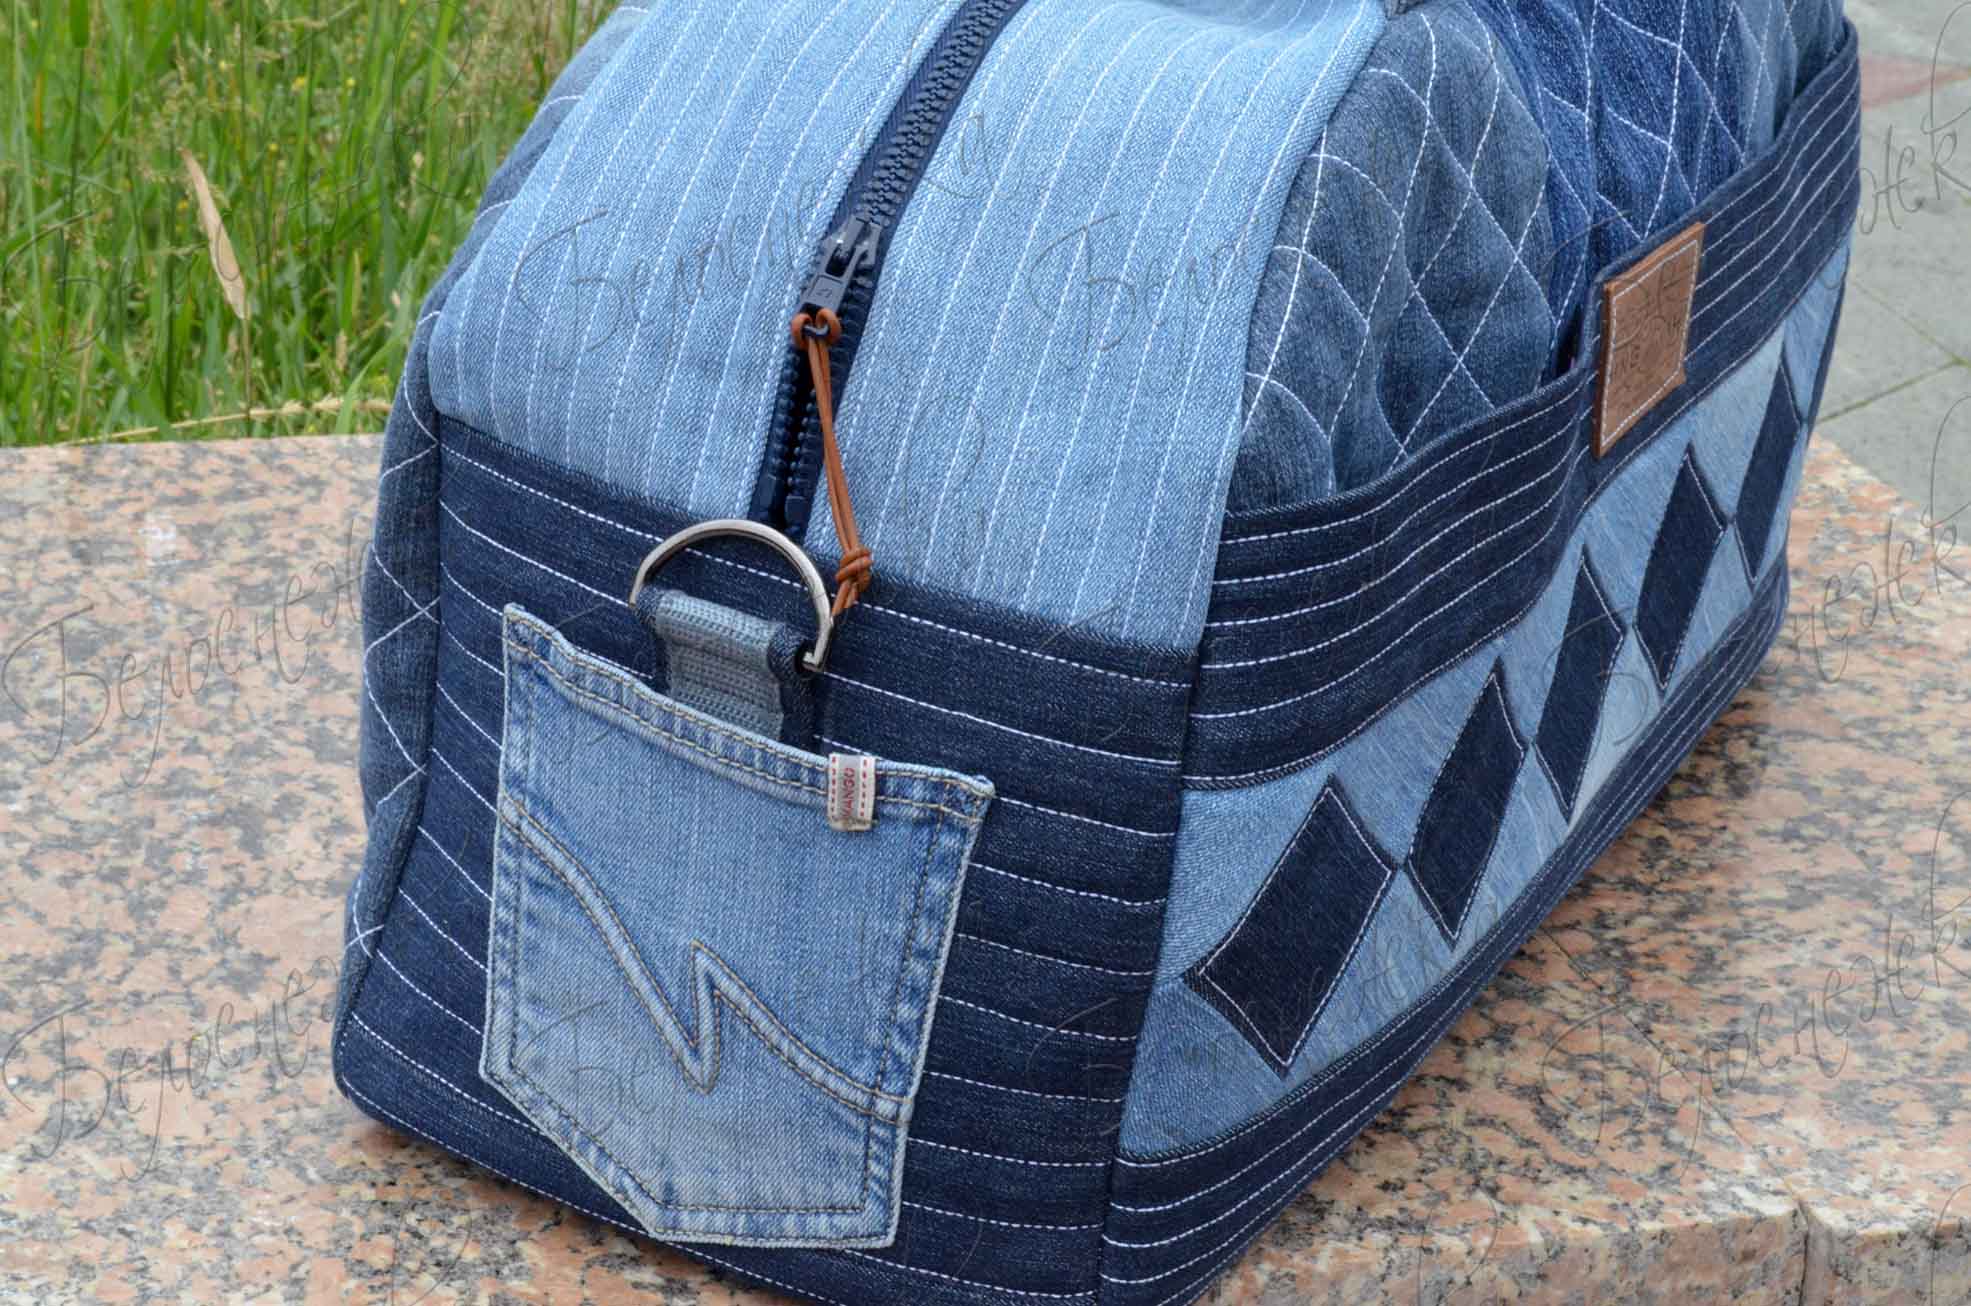 Рюкзак из джинсов своими руками - делаем быстро и правильно модный рюкзак (115 фото)